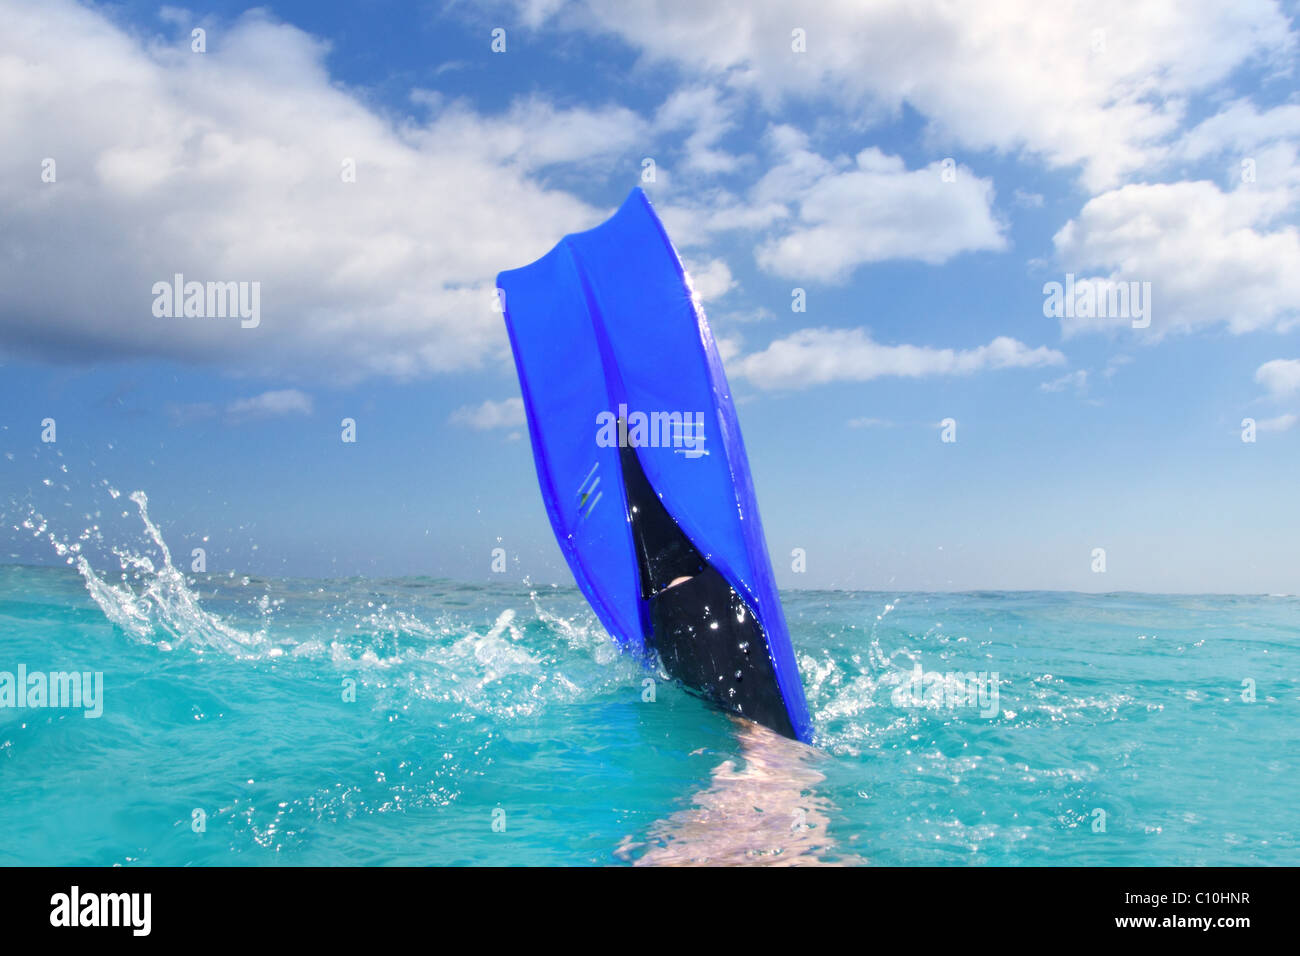 Tauchen, blue Fin planschen im Urlaub in der Karibik Oberfläche Metapher Stockfoto